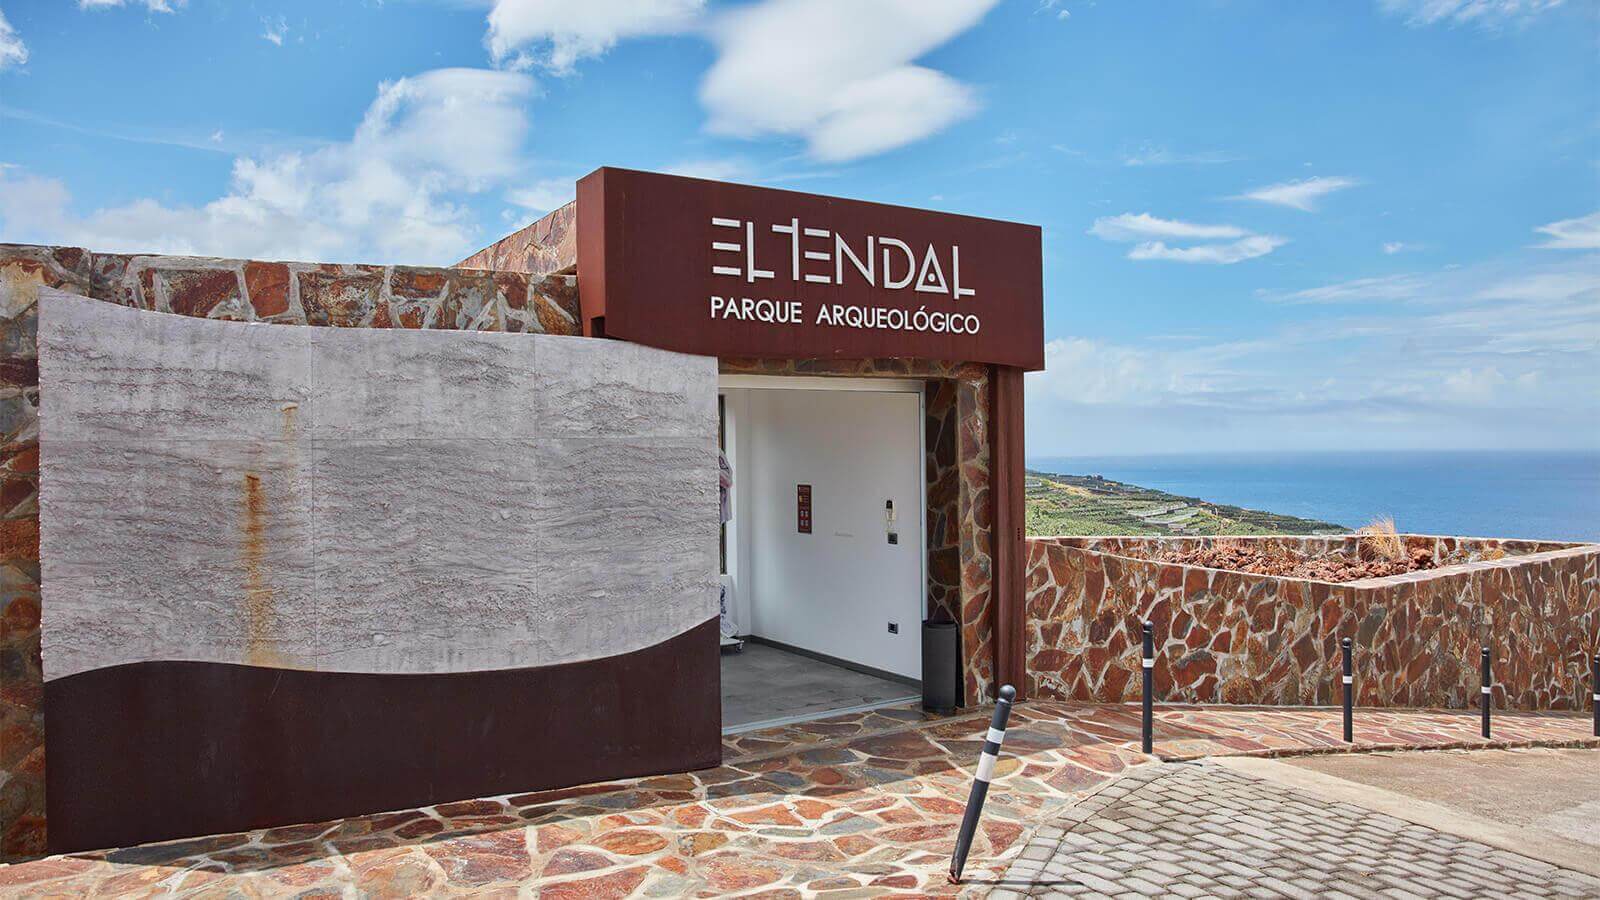 Parco Archeologico El Tendal, La Palma.